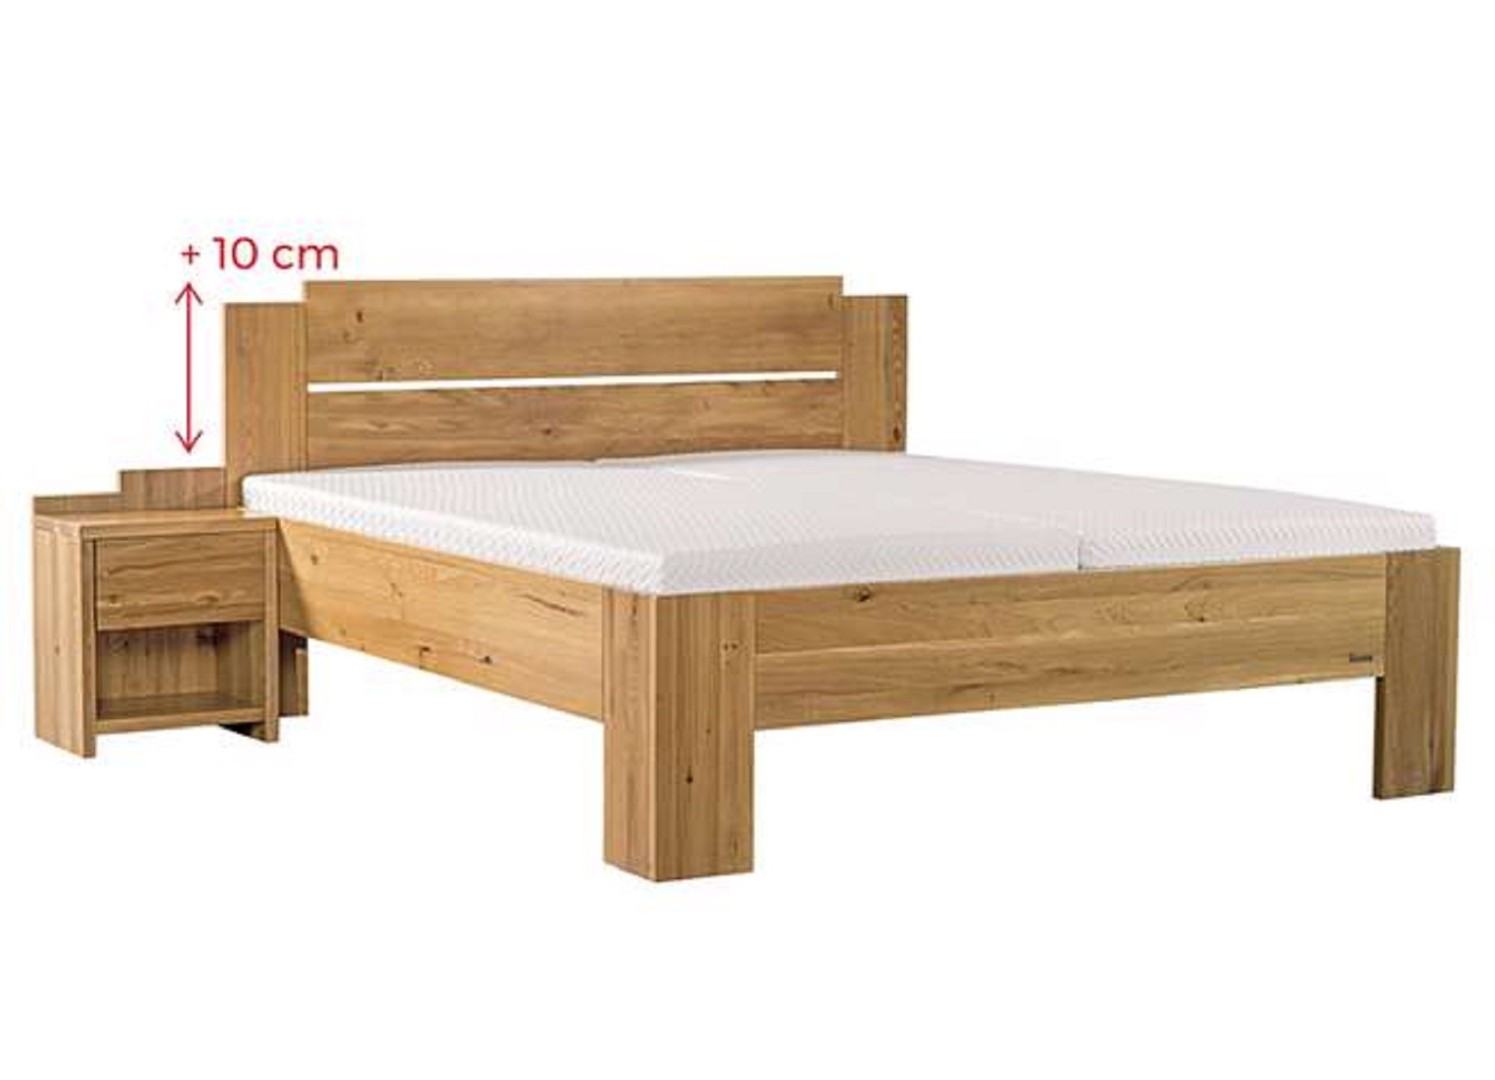 Ahorn GRADO MAX - masivní dubová postel se zvýšeným čelem 80 x 200 cm, dub masiv